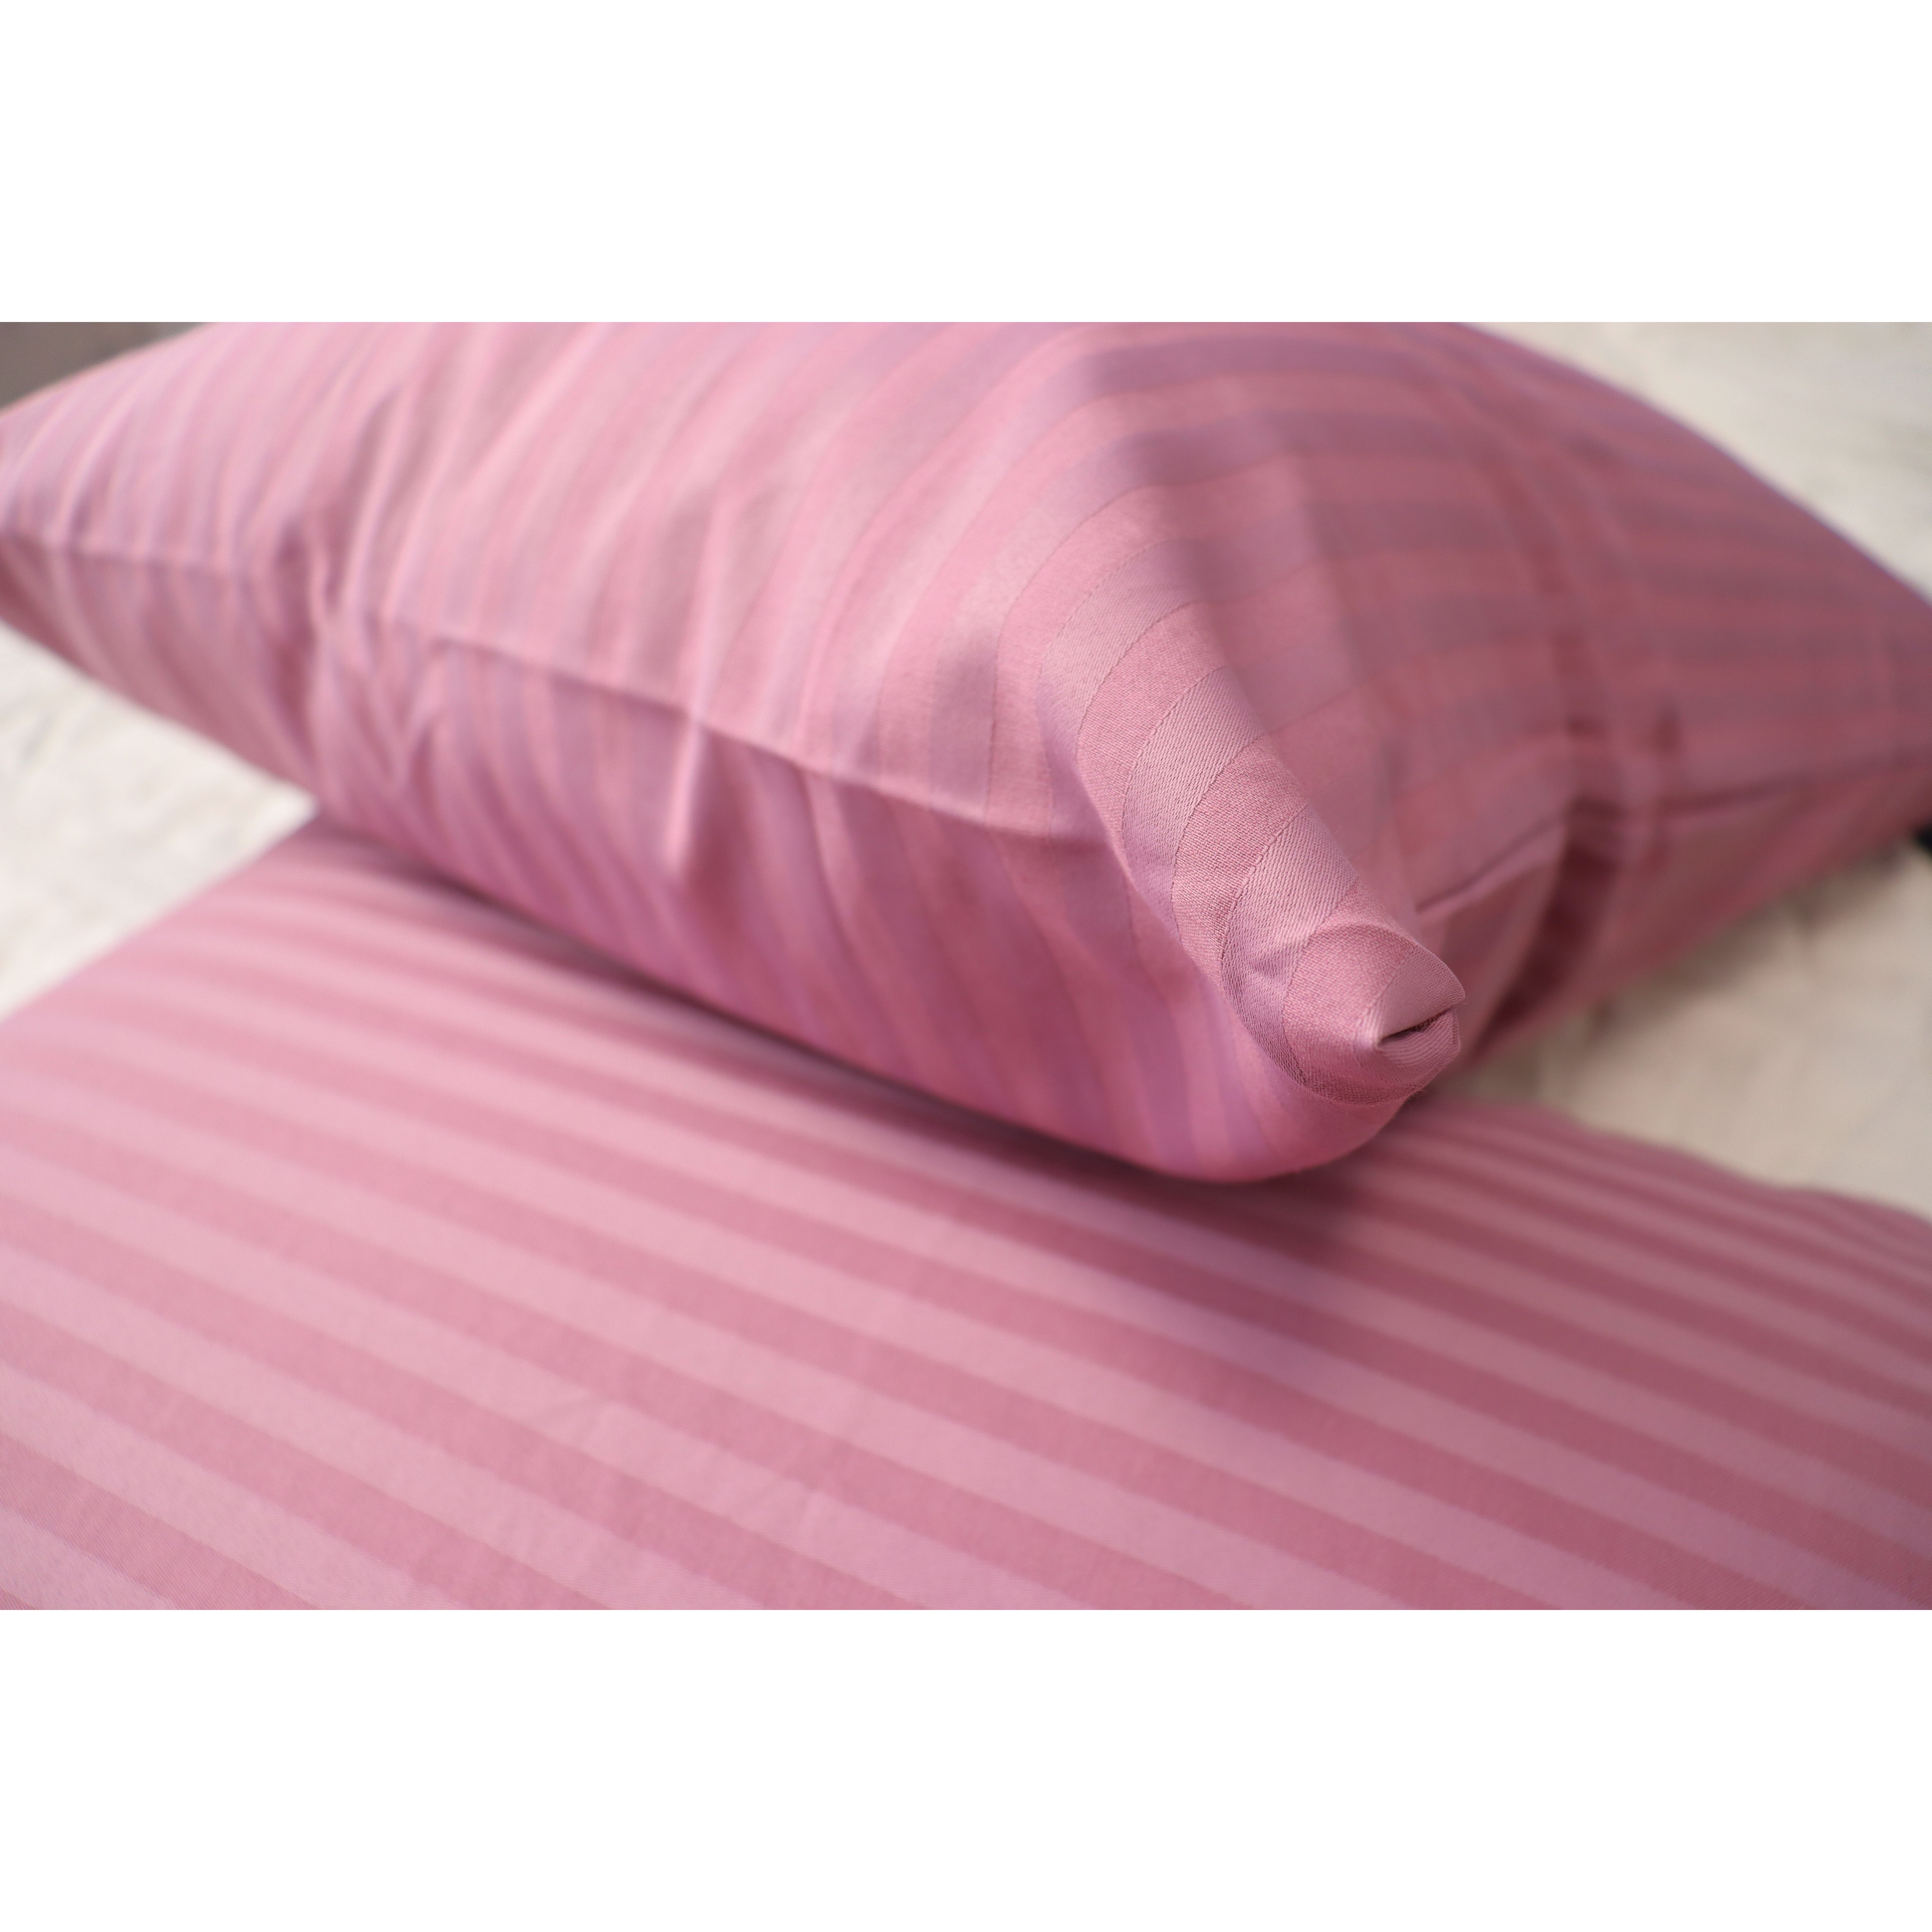 Комплект постельного белья LightHouse Sateen Stripe Murdum евростандарт розовый (603630_2,0) - фото 3